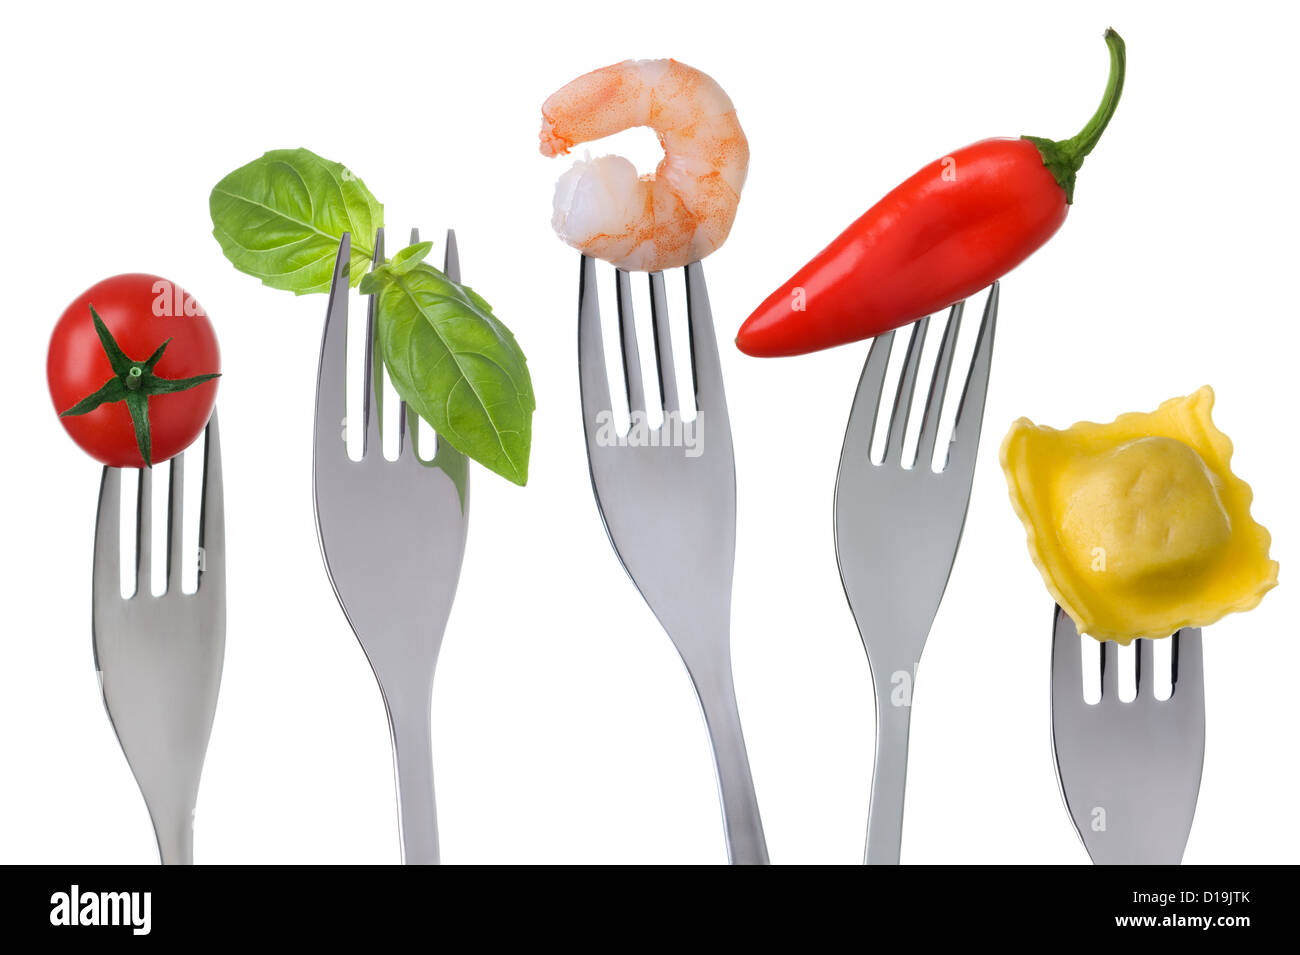 ausgewogene Ernährung von gesunden Lebensmittelgruppen: low fat Protein, Kohlenhydrate, Obst und Gemüse. gesunde Ernährung-Konzept Stockfoto